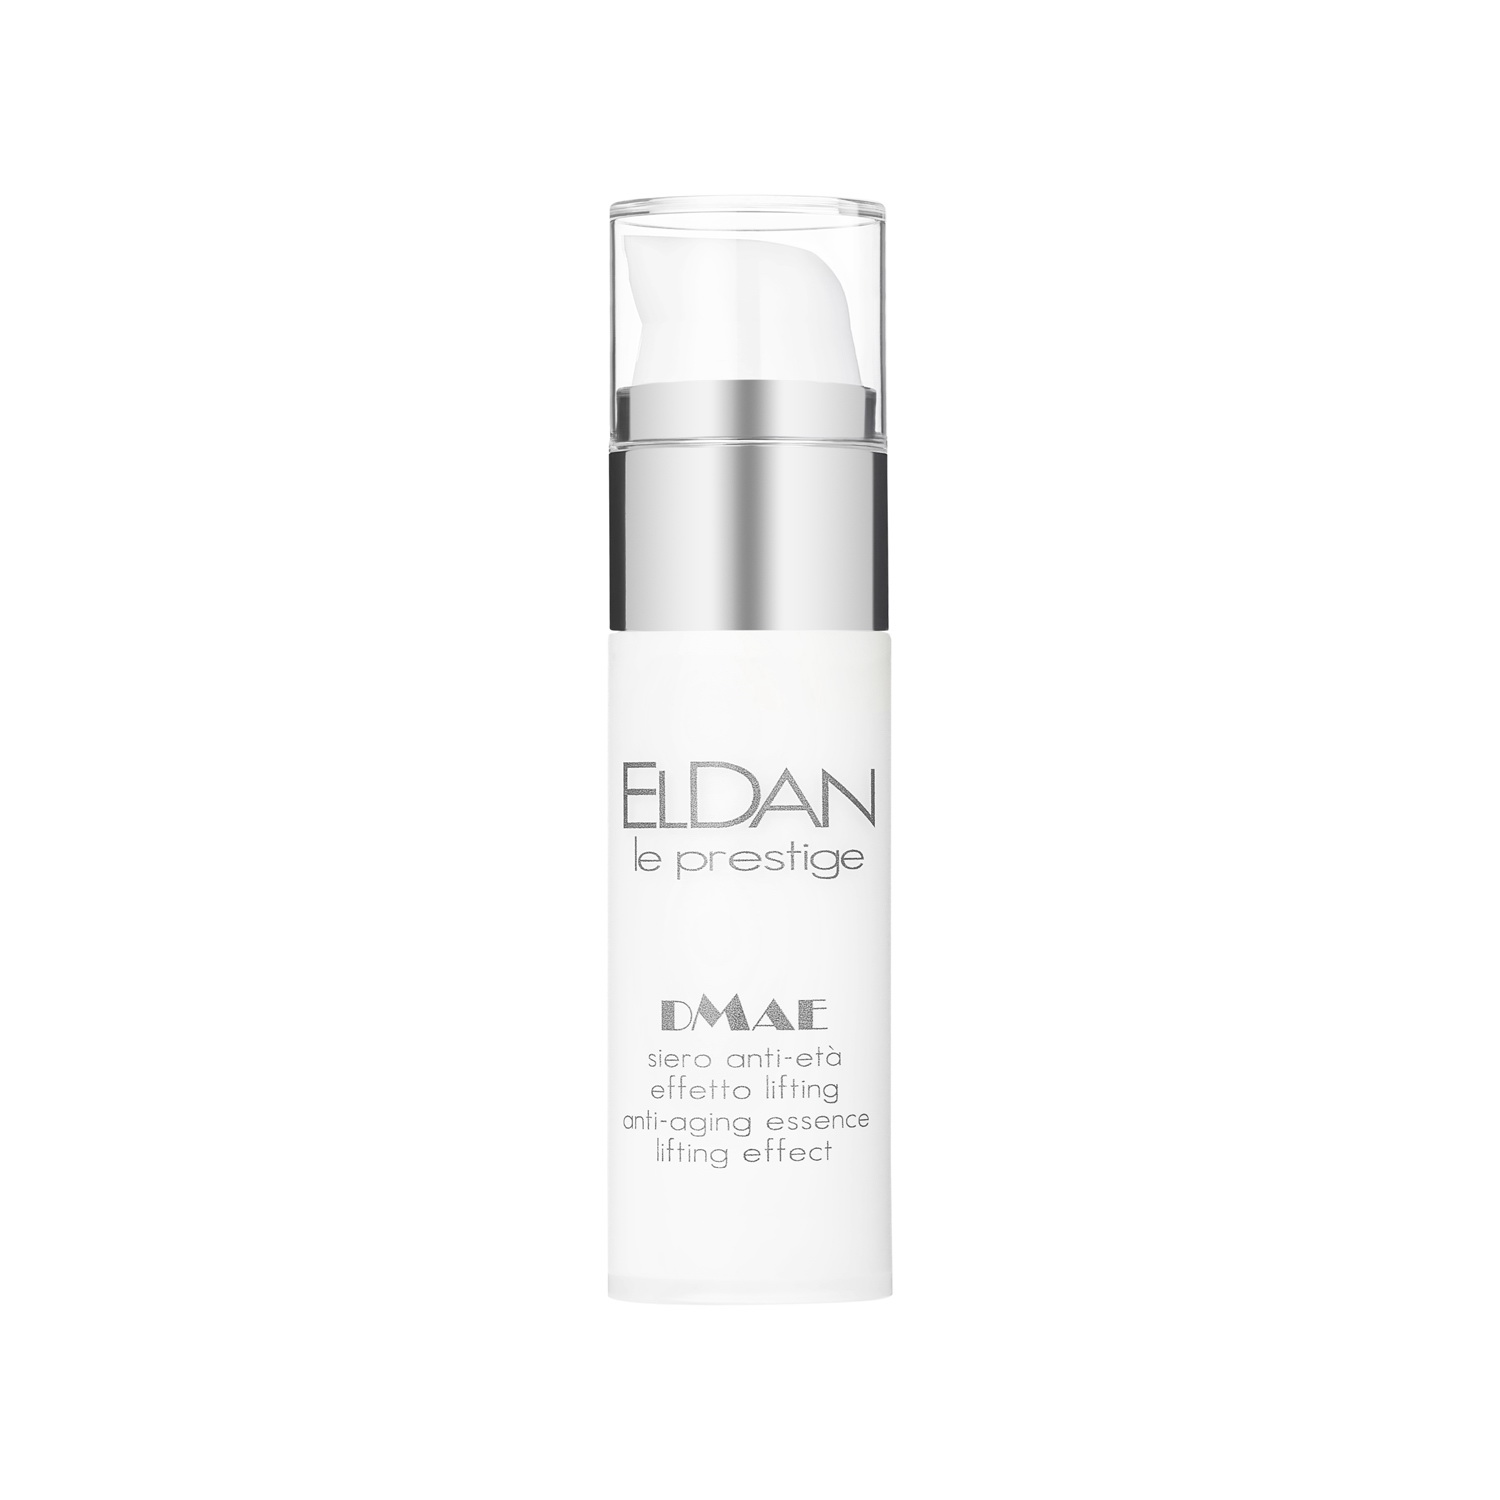 Сыворотка для лица Eldan Cosmetics DMAE Anti-Aging Essence Lifting Effect, 30 мл hada labo крем для лица gokujyun alfa увлажняющий с альфа липоевой кислотой 50